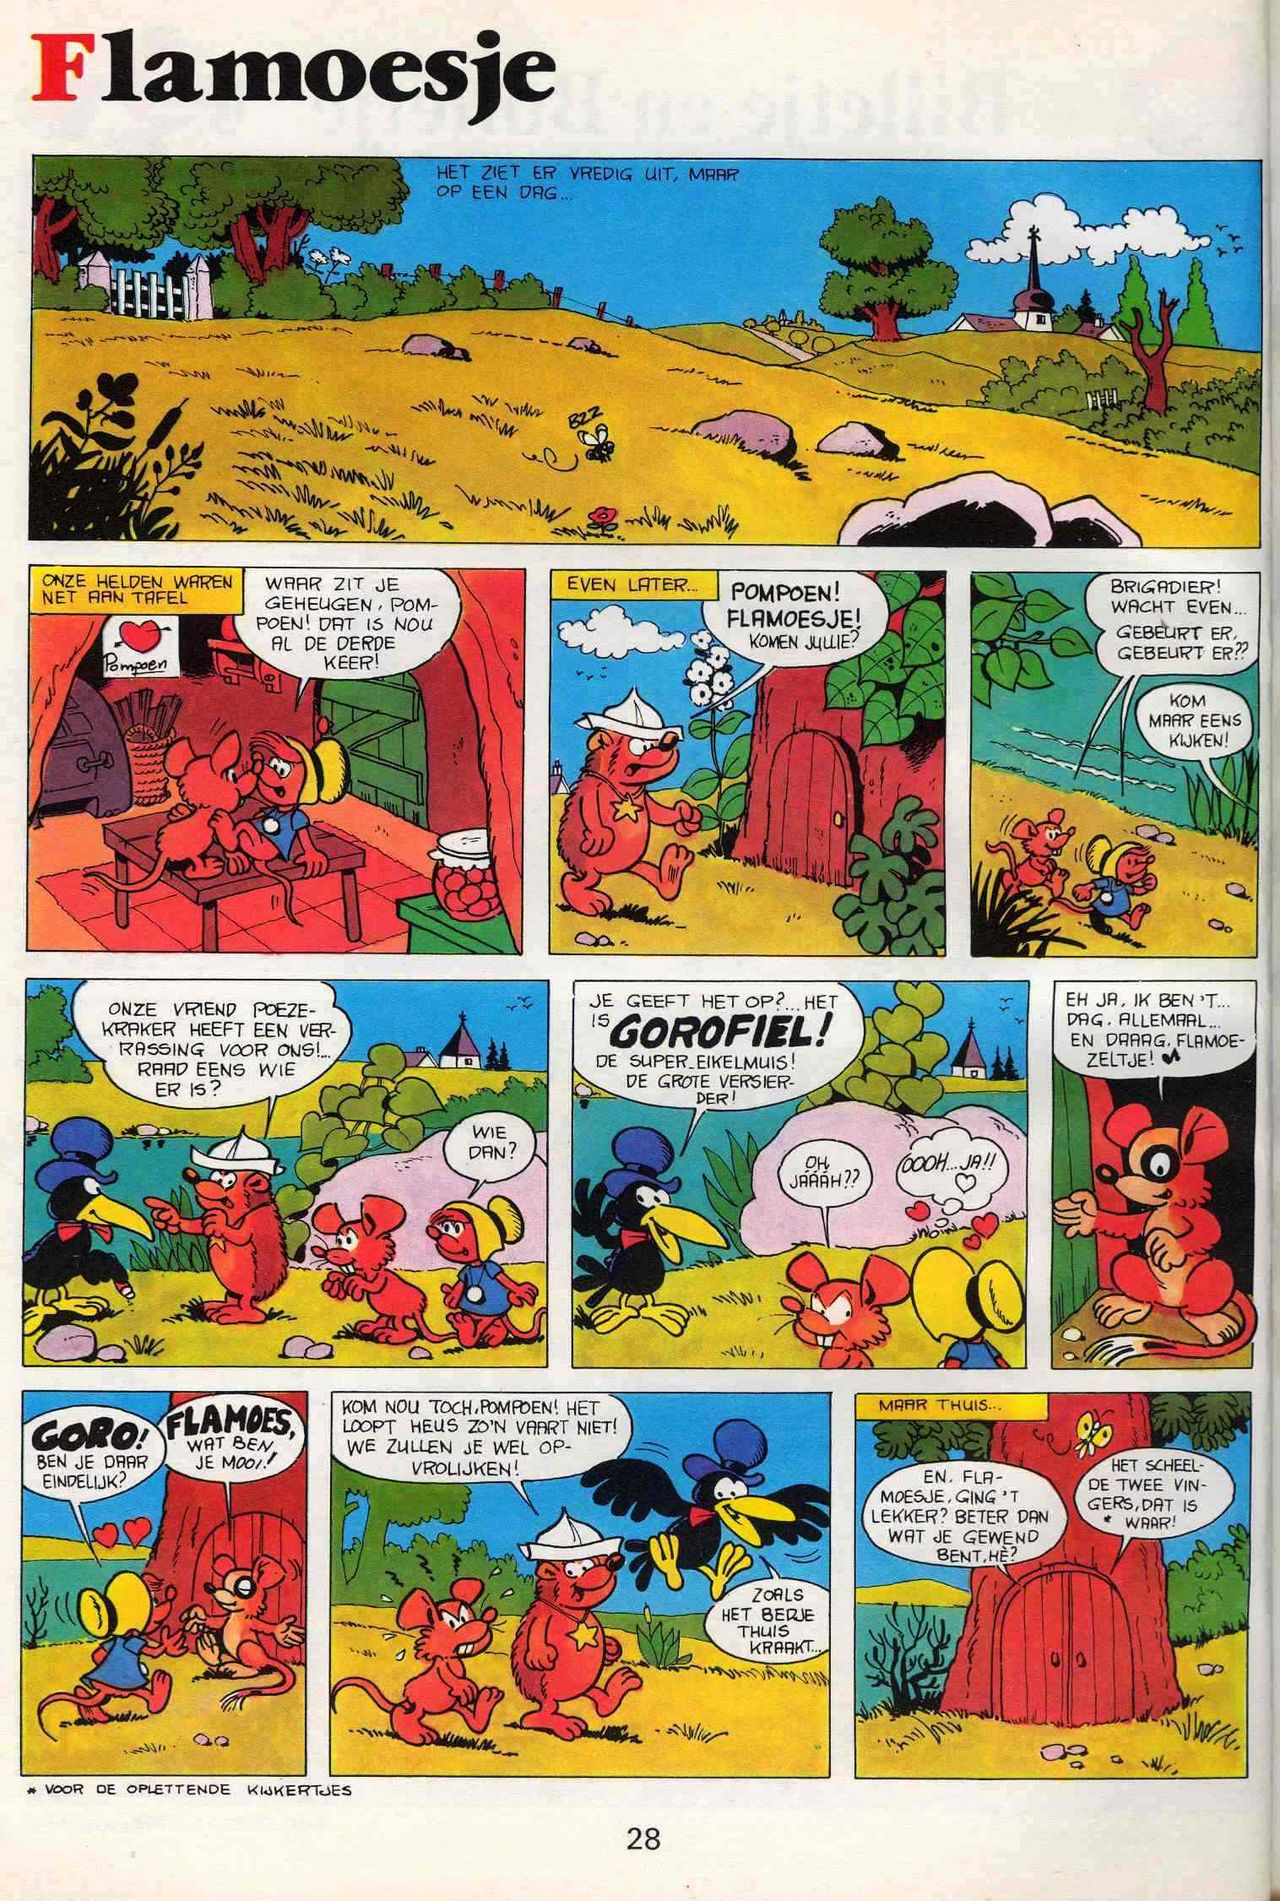 Strip-Tease - 01 - Een Vrolijke Parodie Op Bekende Striphelden (Dutch) Een driedelige serie van Roger Brunel 29